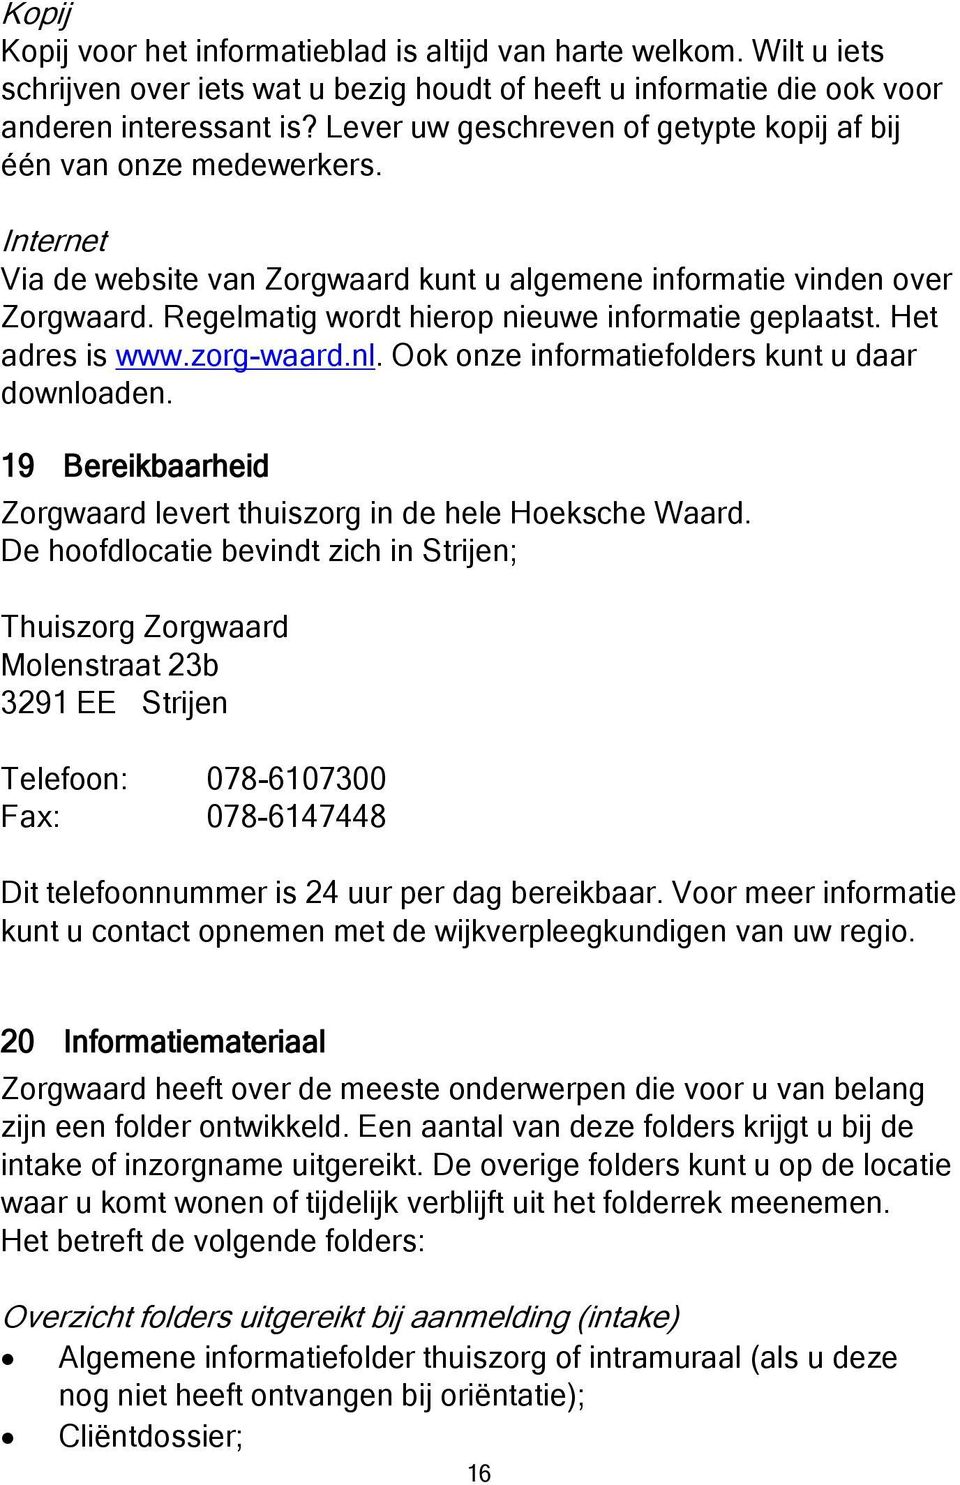 Regelmatig wordt hierop nieuwe informatie geplaatst. Het adres is www.zorg-waard.nl. Ook onze informatiefolders kunt u daar downloaden.